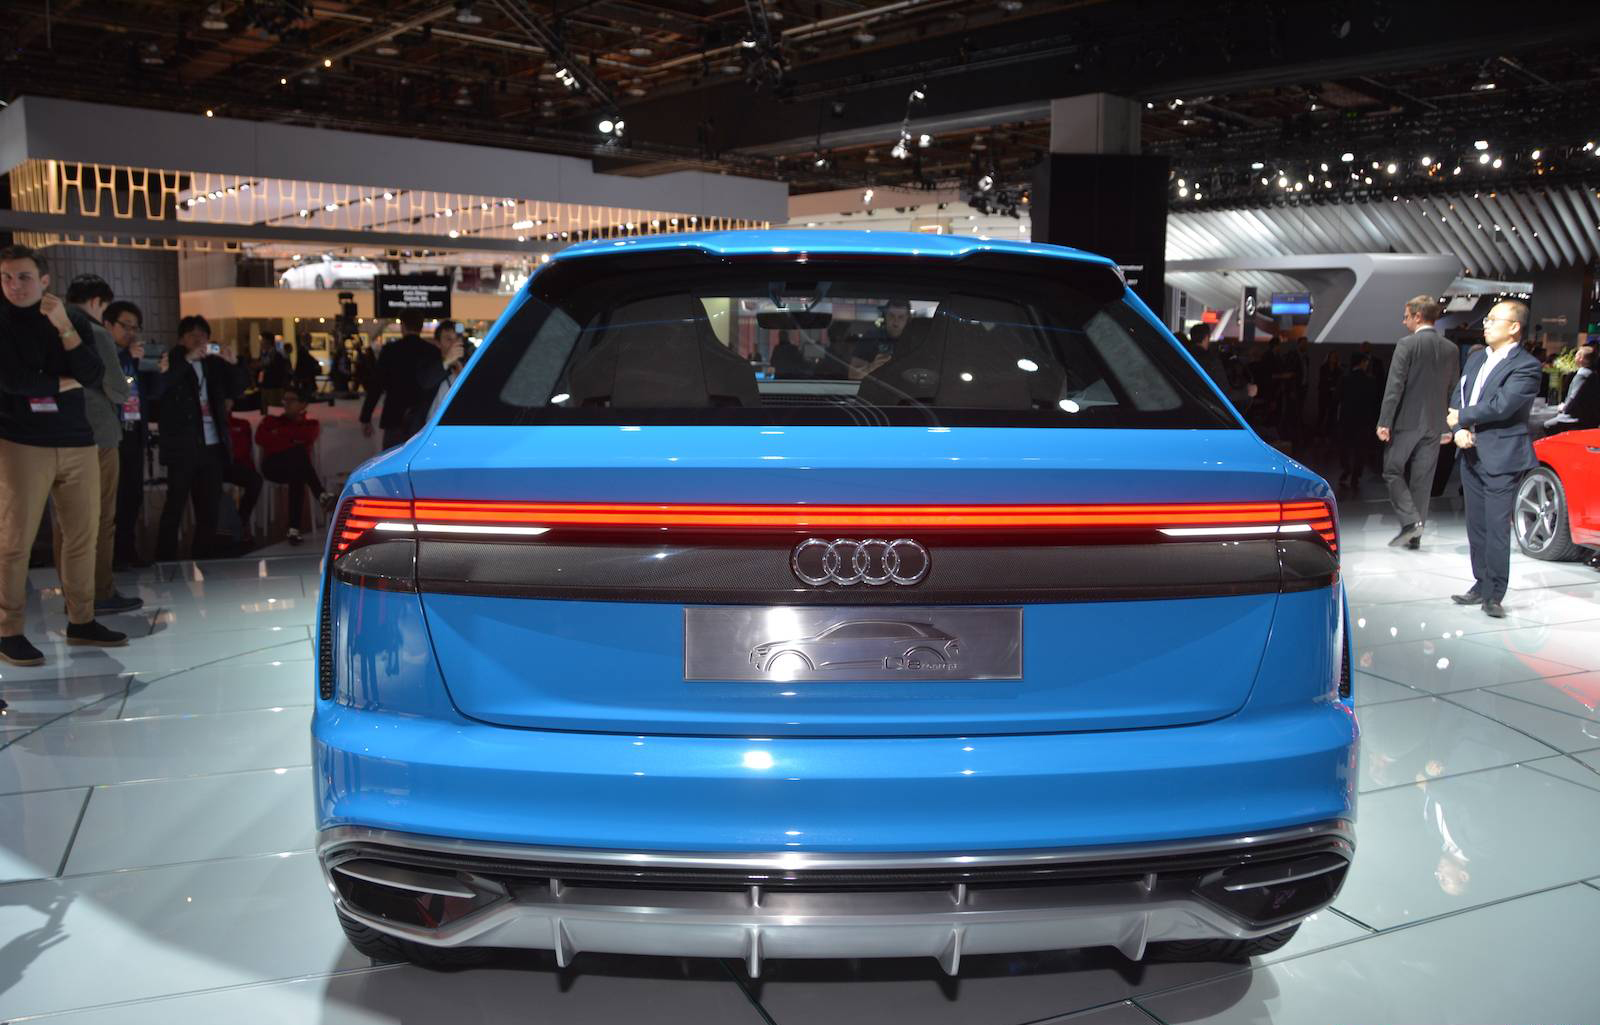 600л.с.+ Audi RS Q8 Concept дебютирует в Женеве 2017